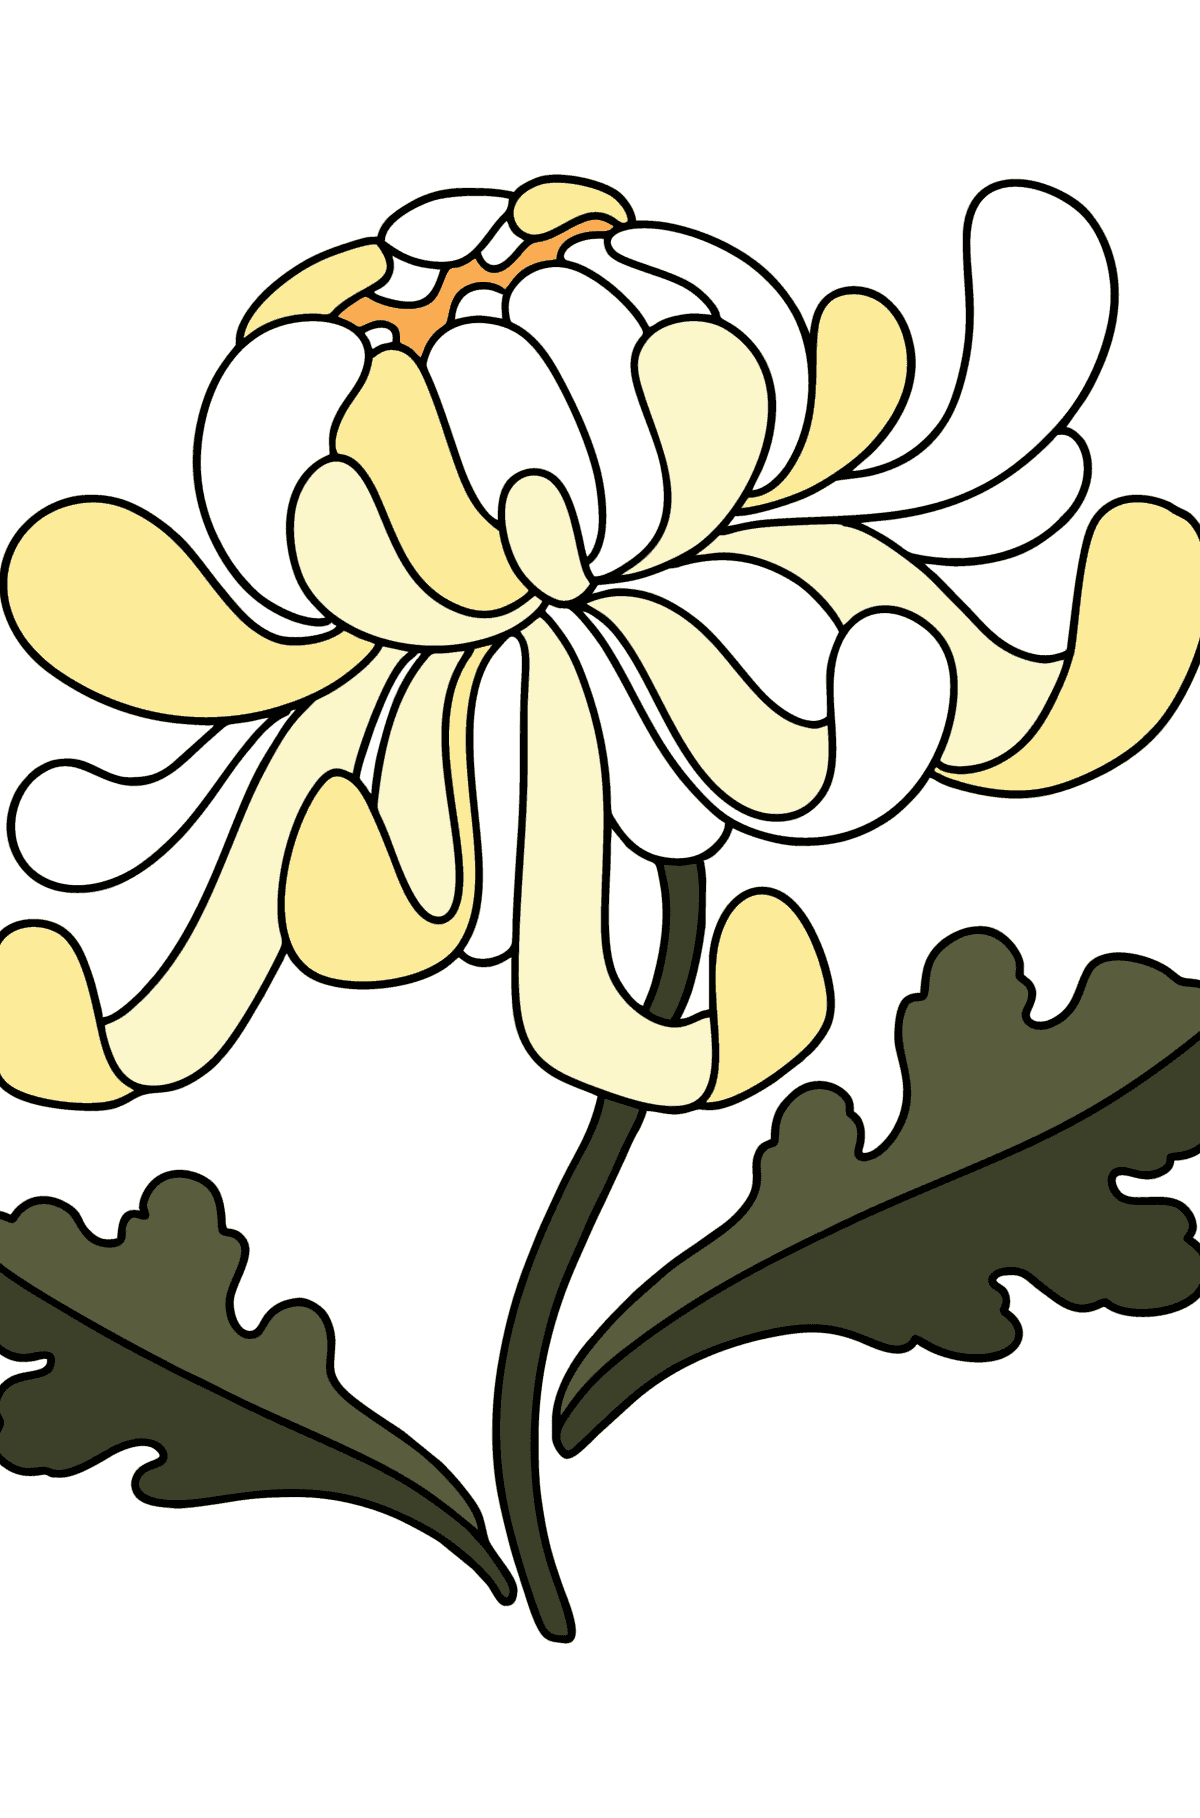 Disegno di Crisantemi da colorare - Disegni da colorare per bambini